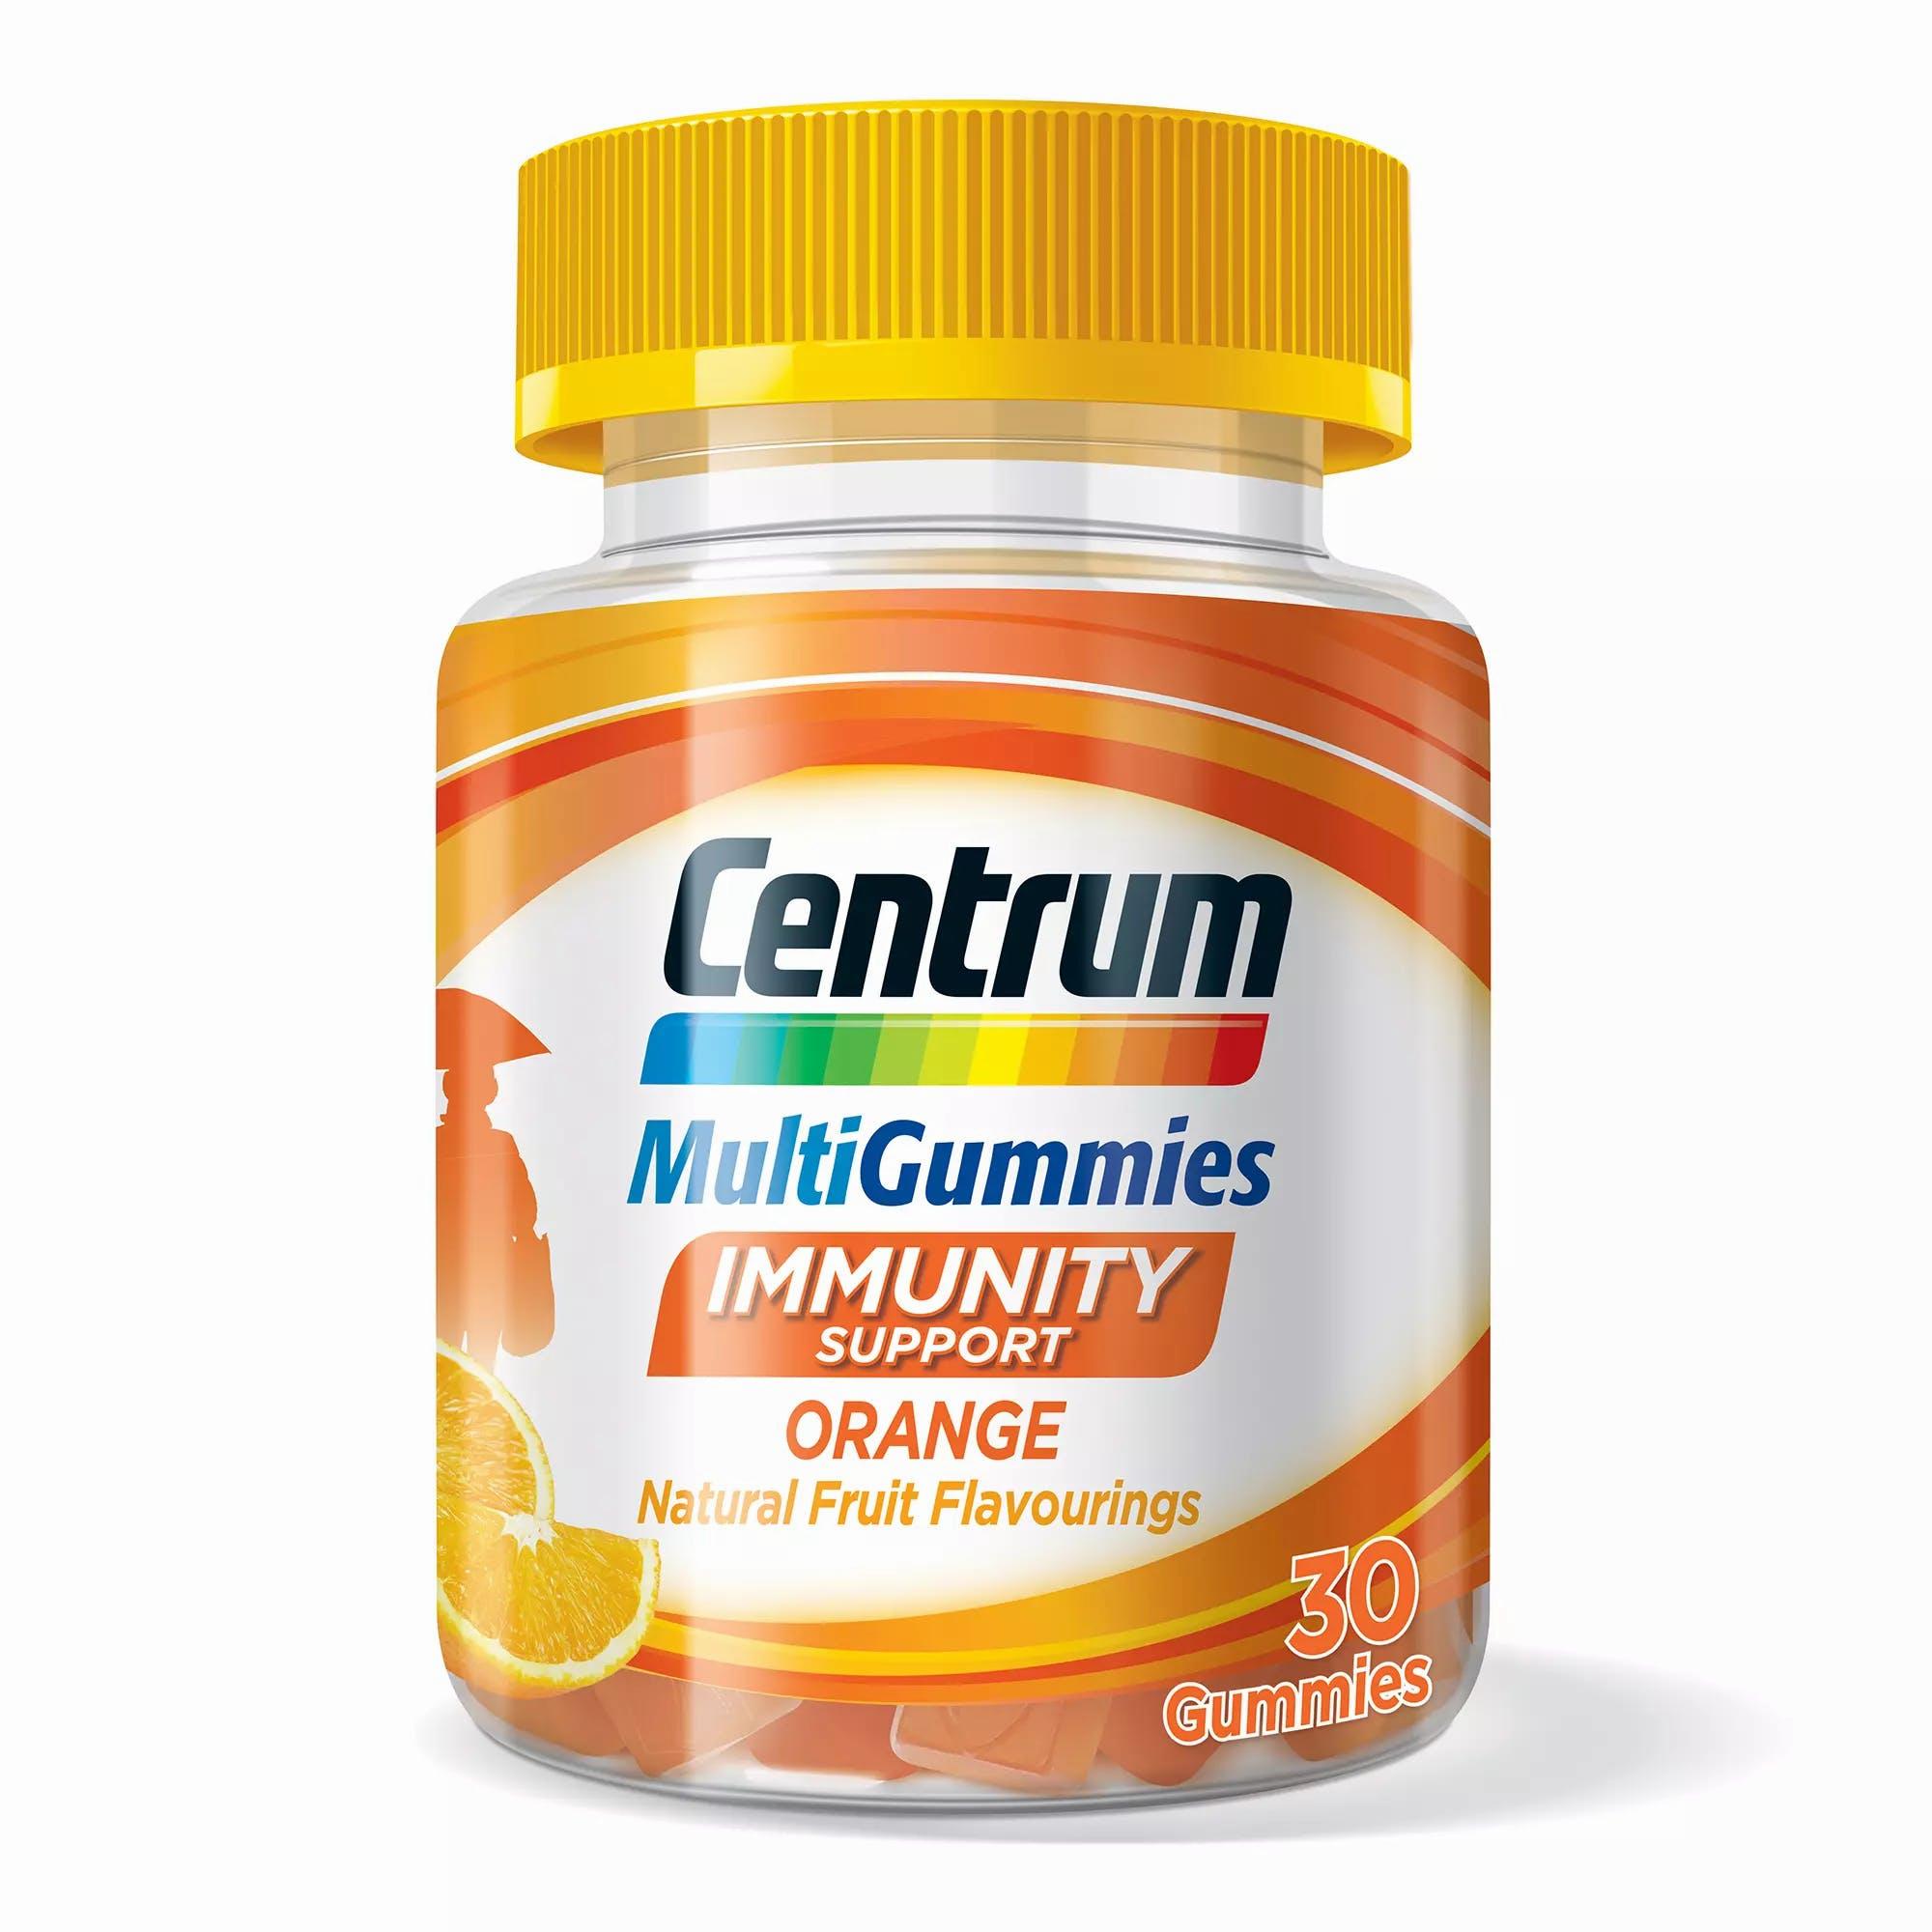 A bottle of Centrum MultiGummies Immunity Support gummies in orange flavor.